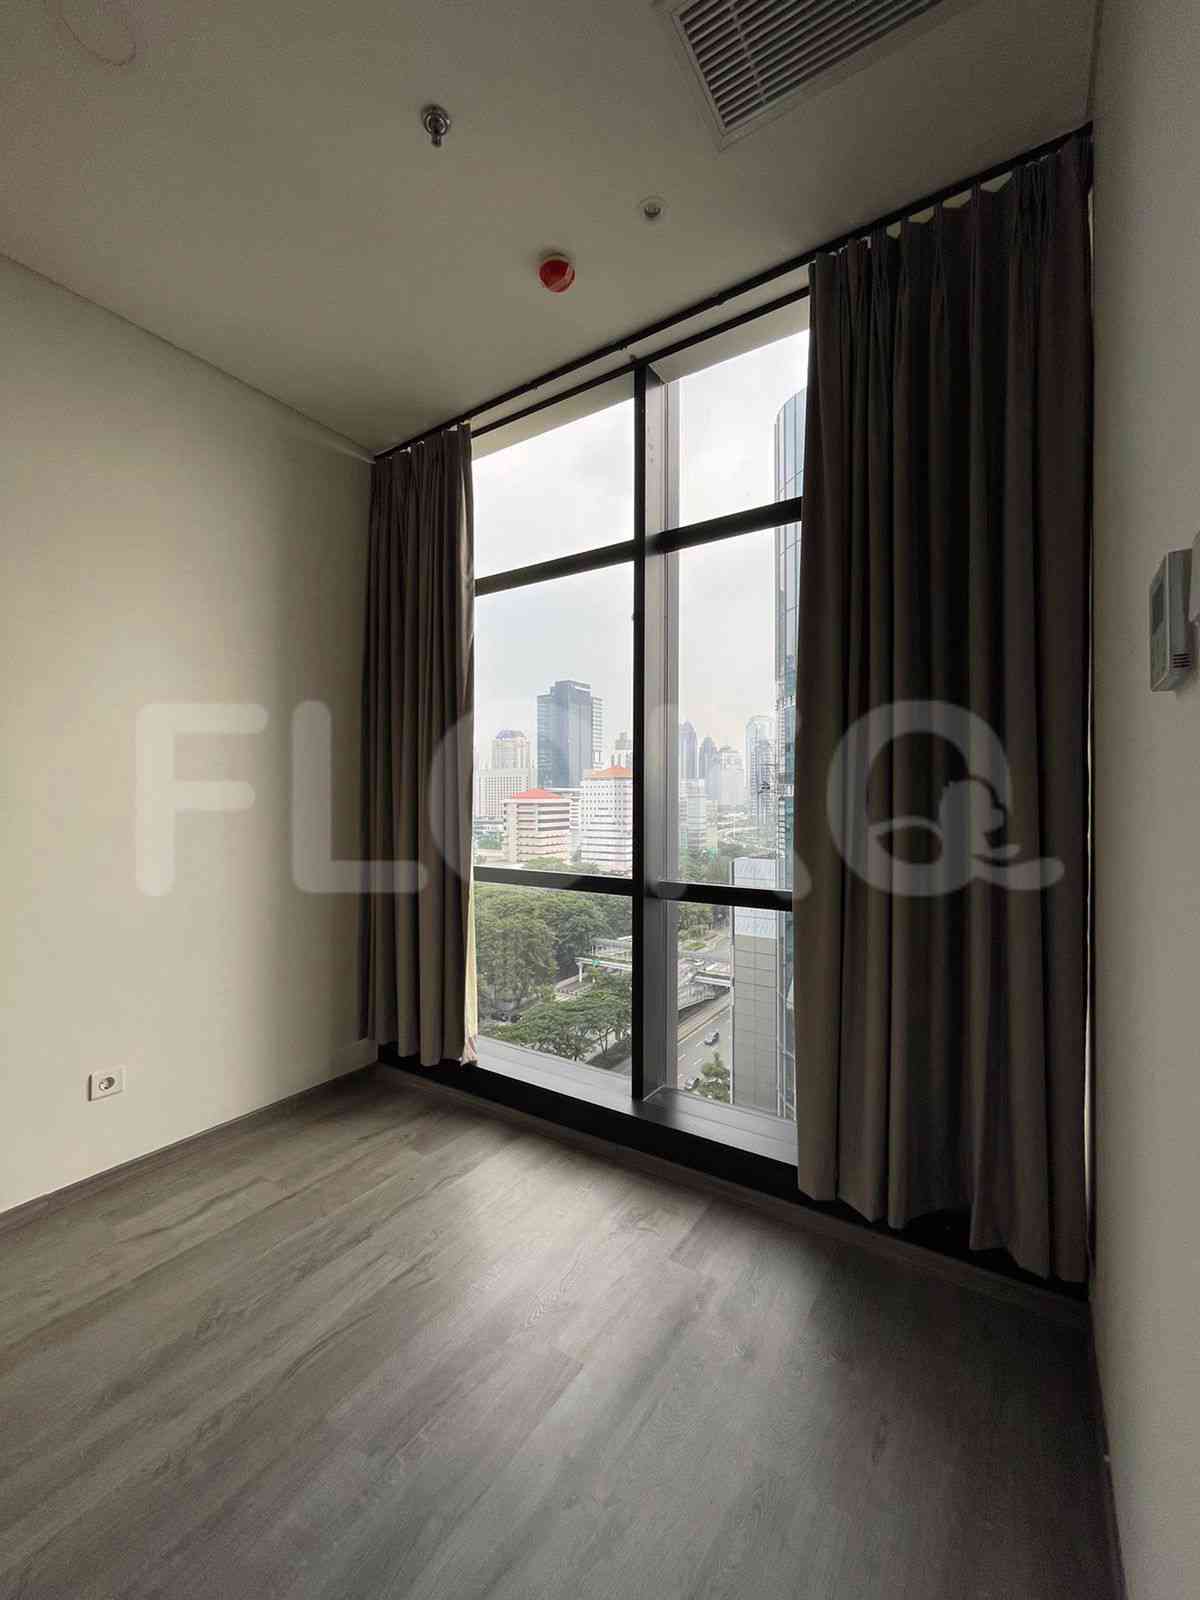 3 Bedroom on 10th Floor for Rent in Sudirman Suites Jakarta - fsuaf7 6